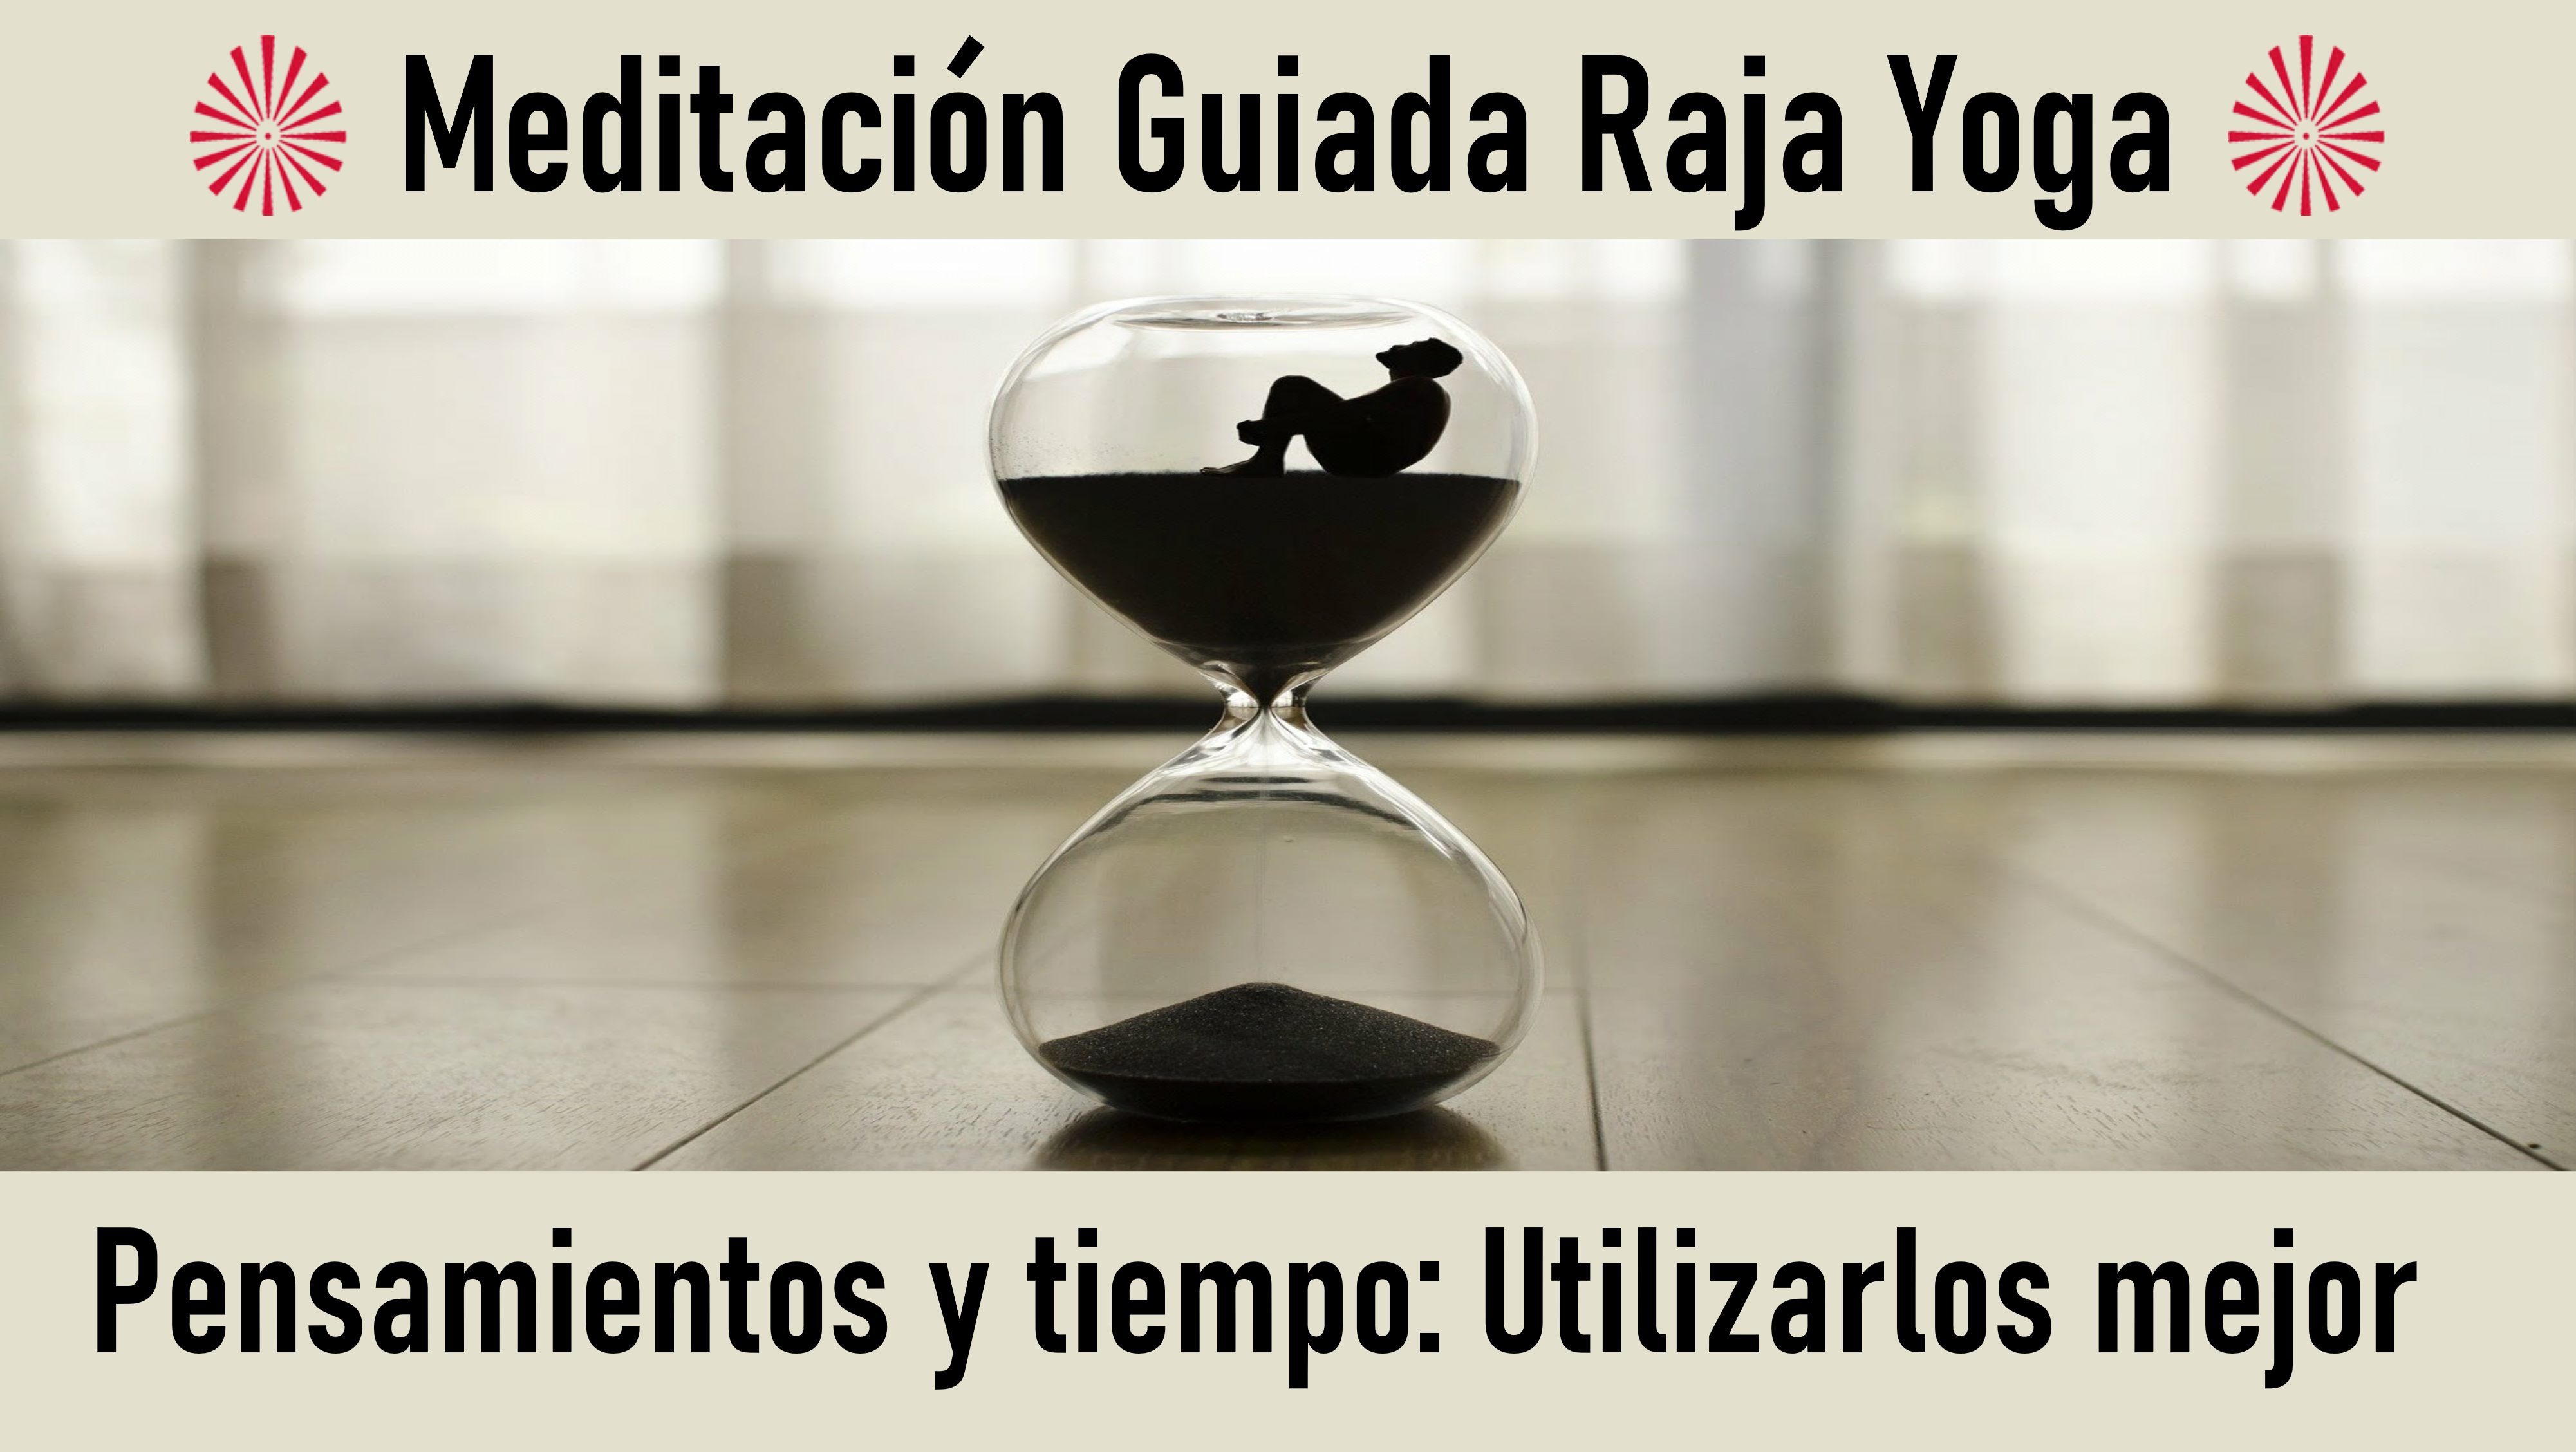 Meditación Raja Yoga Pensamientos y tiempo  utilizarlos mejor (22 Julio 2020) On-line desde Sevilla